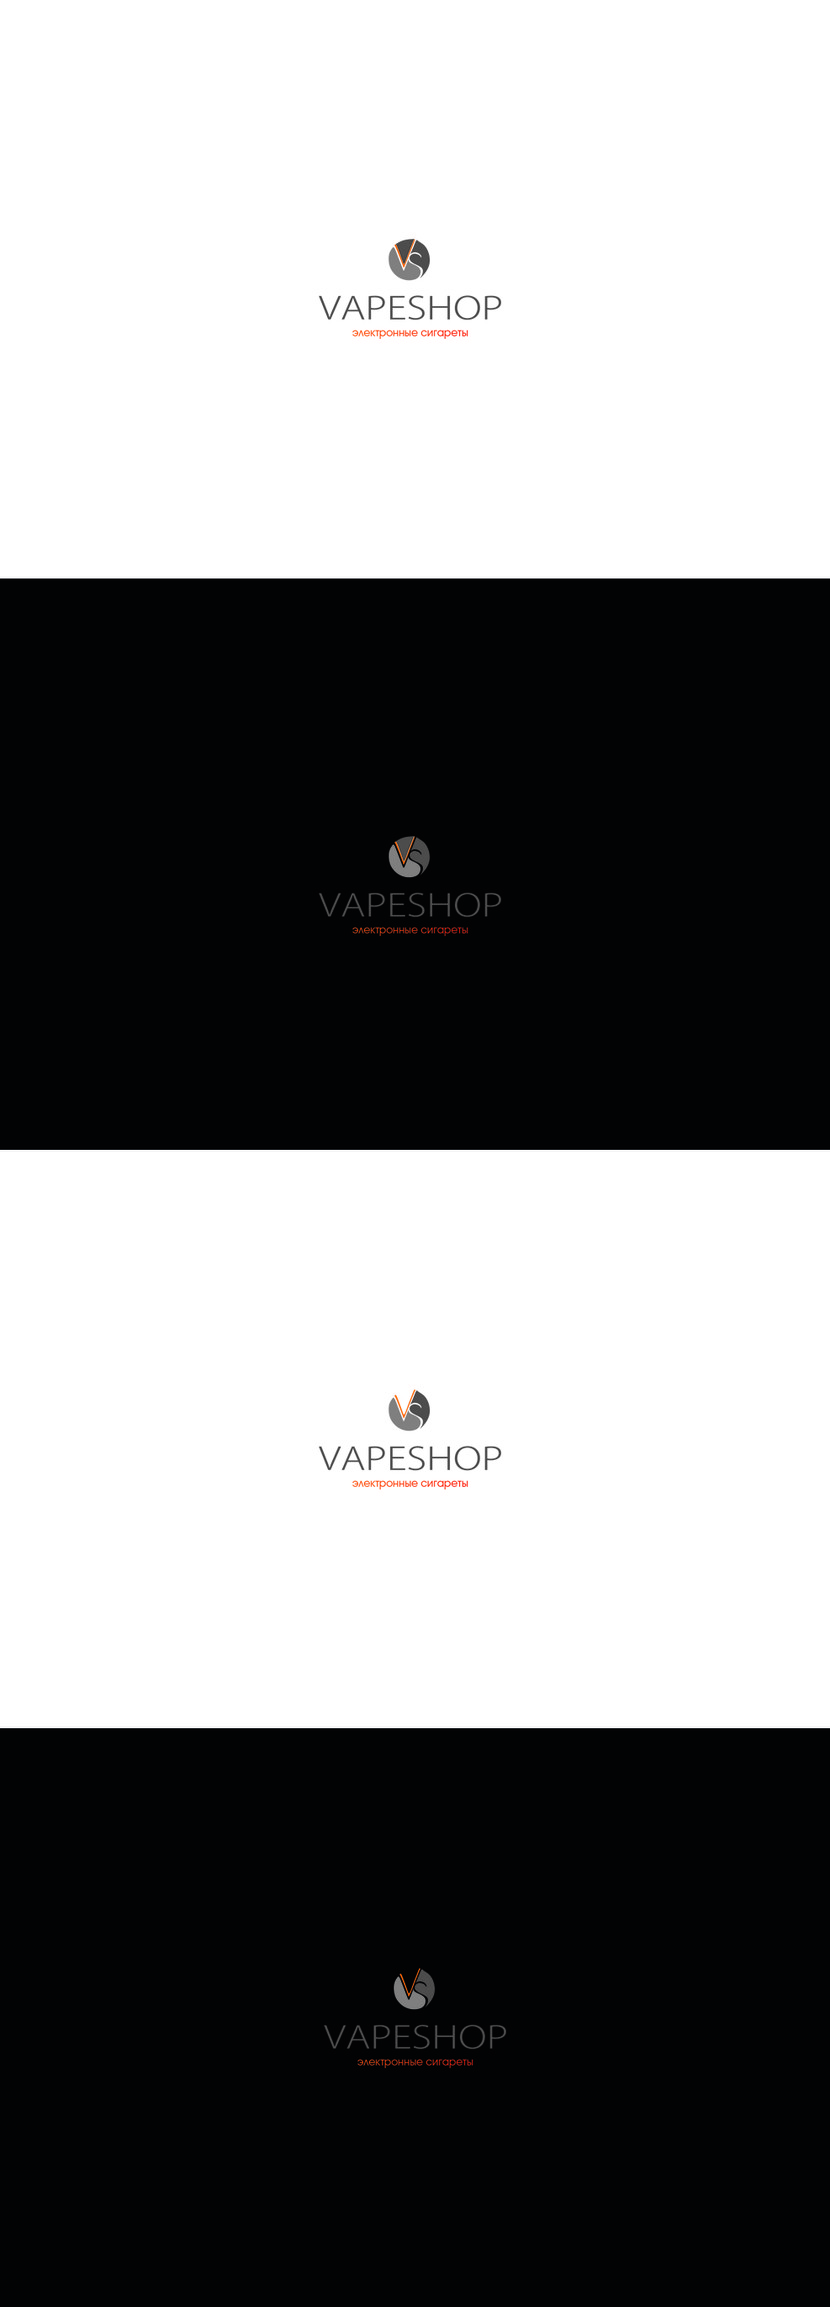 и 3, и 4. - Логотип для компании электронных сигарет